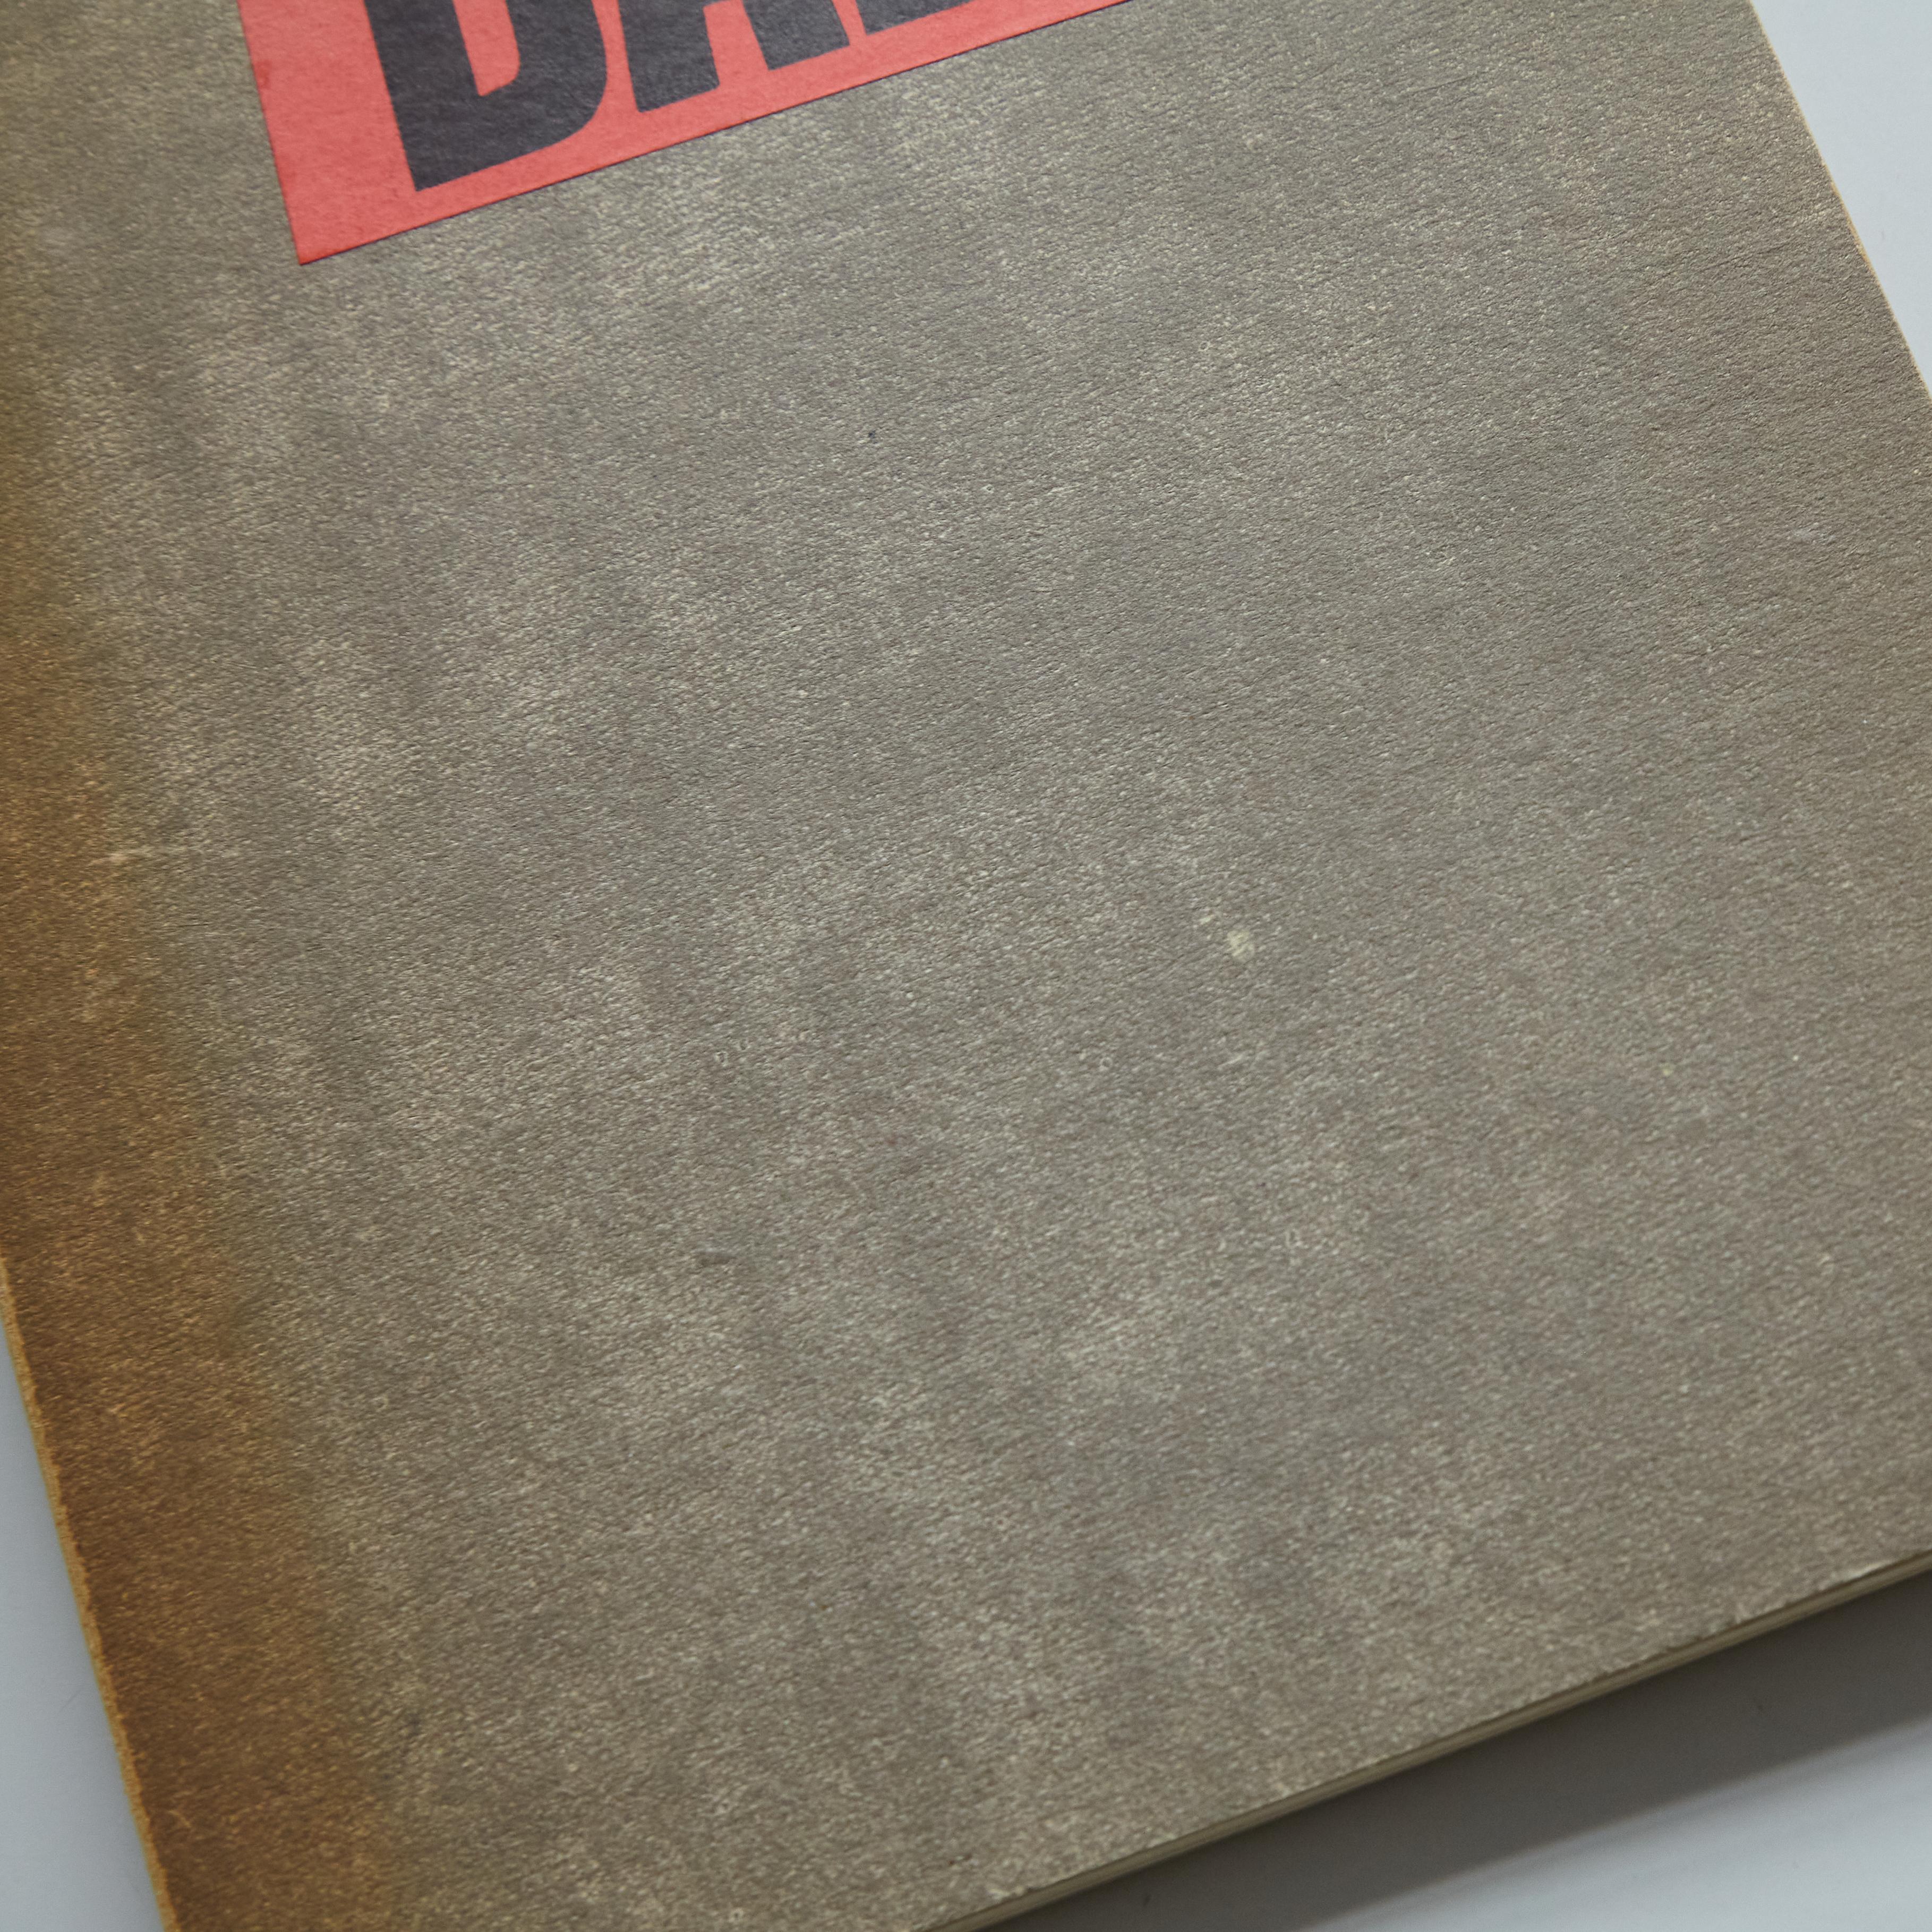 „DADA dokumentiert eine Bewegung“, Veröffentlichung 1958 im Zustand „Gut“ im Angebot in Barcelona, Barcelona